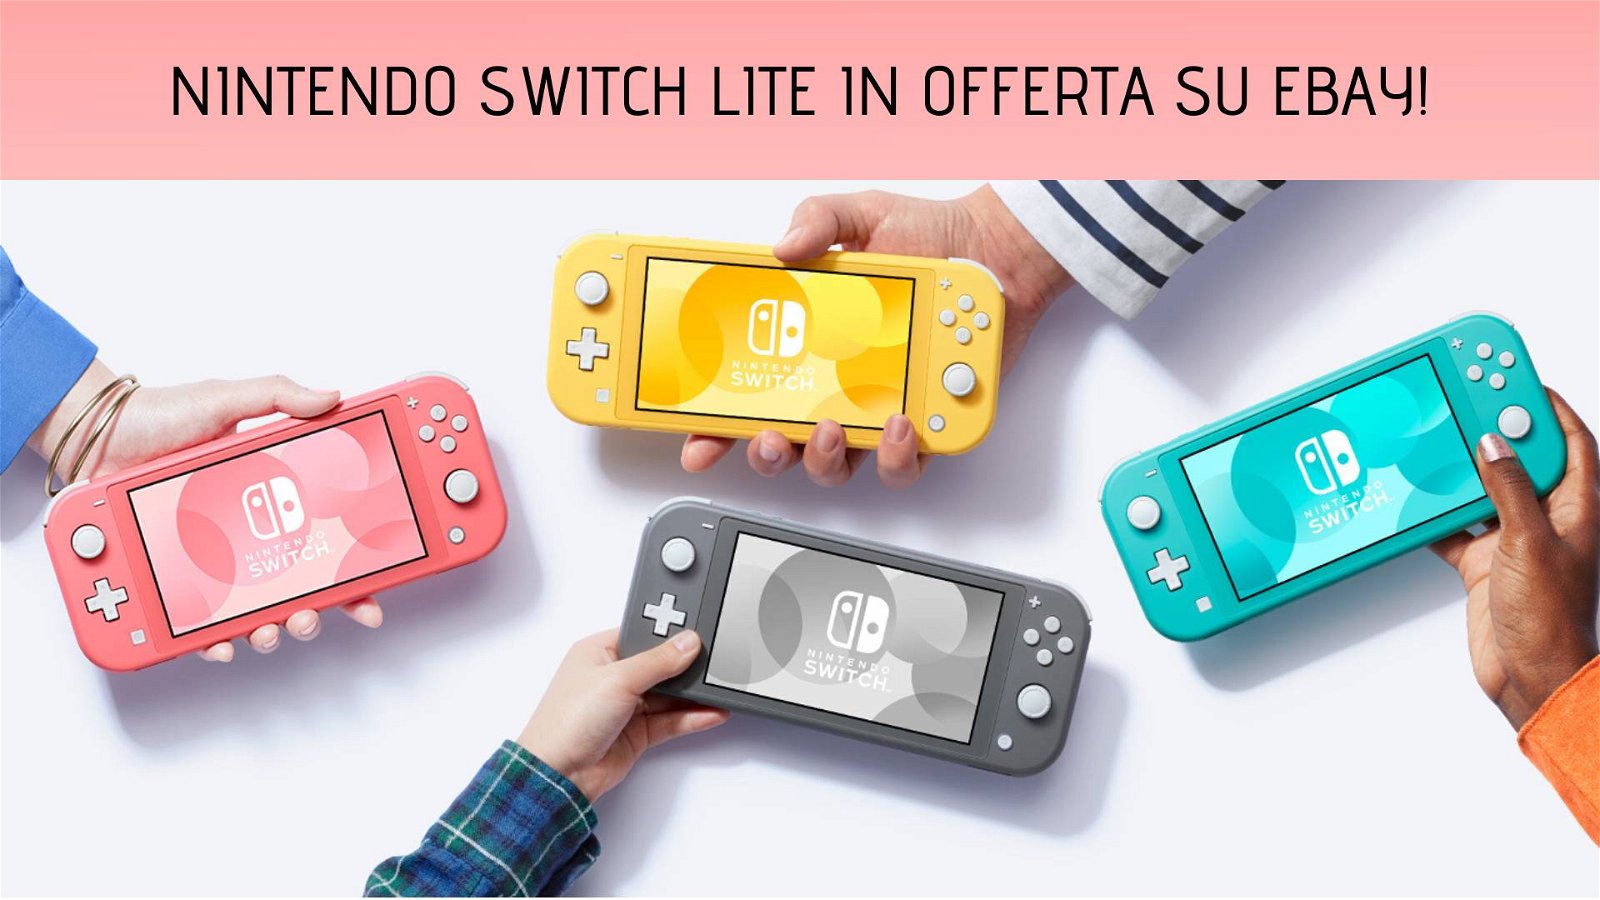 Immagine di Nintendo Switch Lite: prezzo d'occasione su eBay!